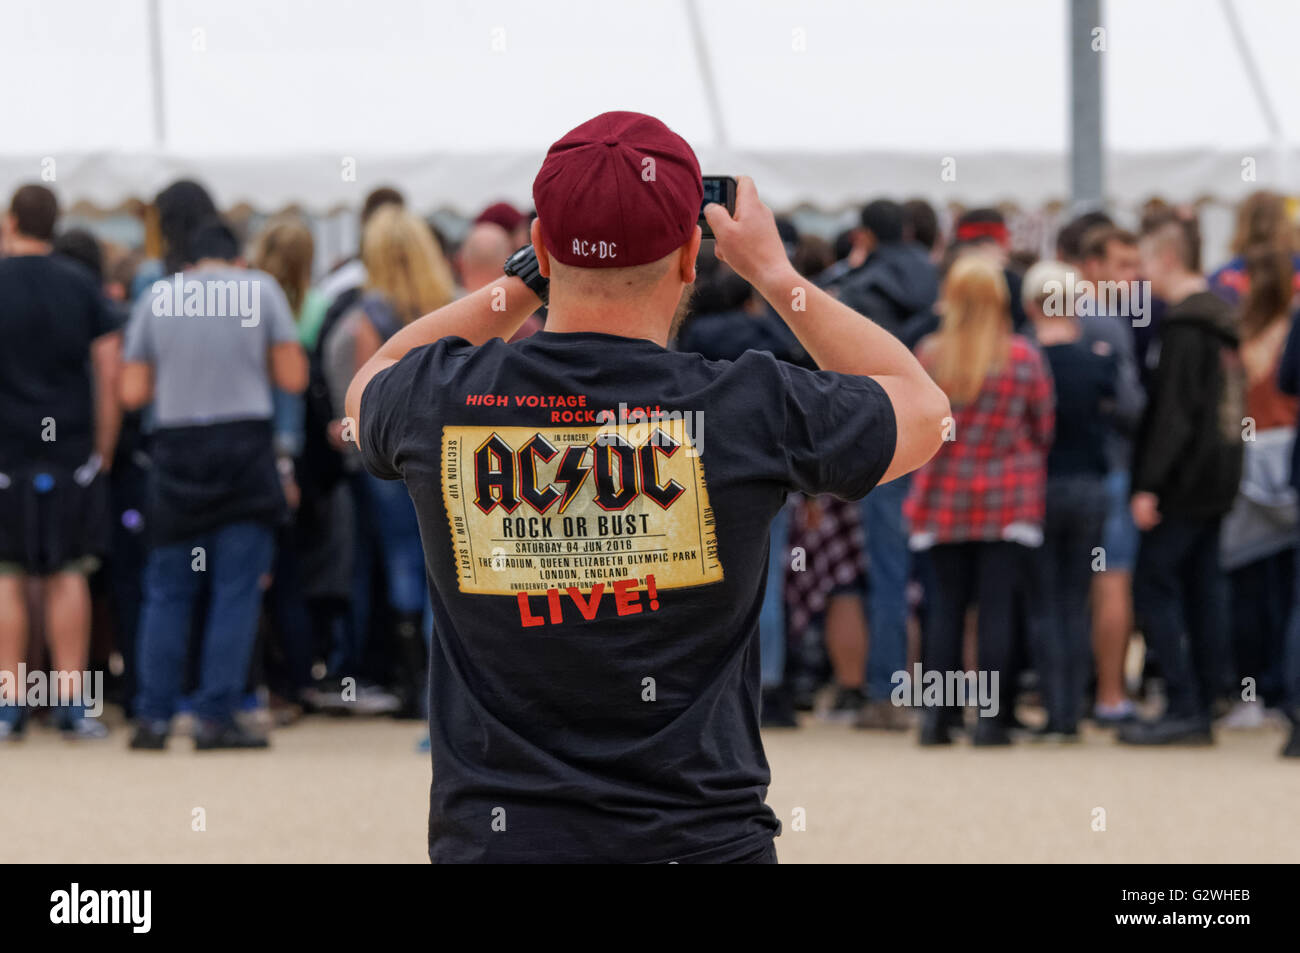 Fans de rock band AC/DC en attente de concert, Londres Angleterre Royaume-Uni Banque D'Images